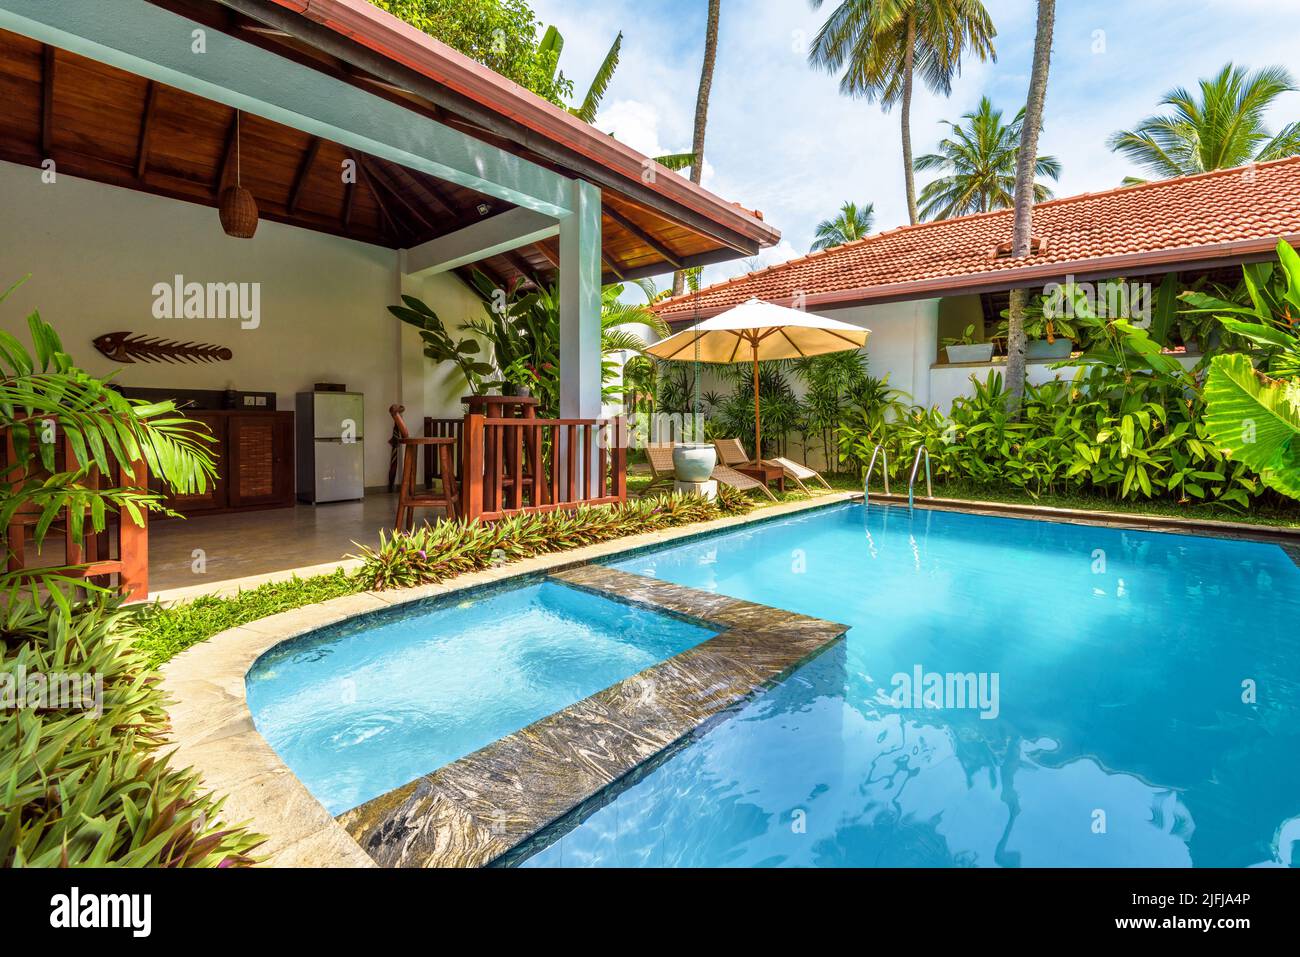 Sri Lanka - Nov 4, 2017: Casa di lusso con piscina e terrazza in cortile. Bungalow in stile indiano o caraibico e giardino nel cortile. Bella villa su t Foto Stock